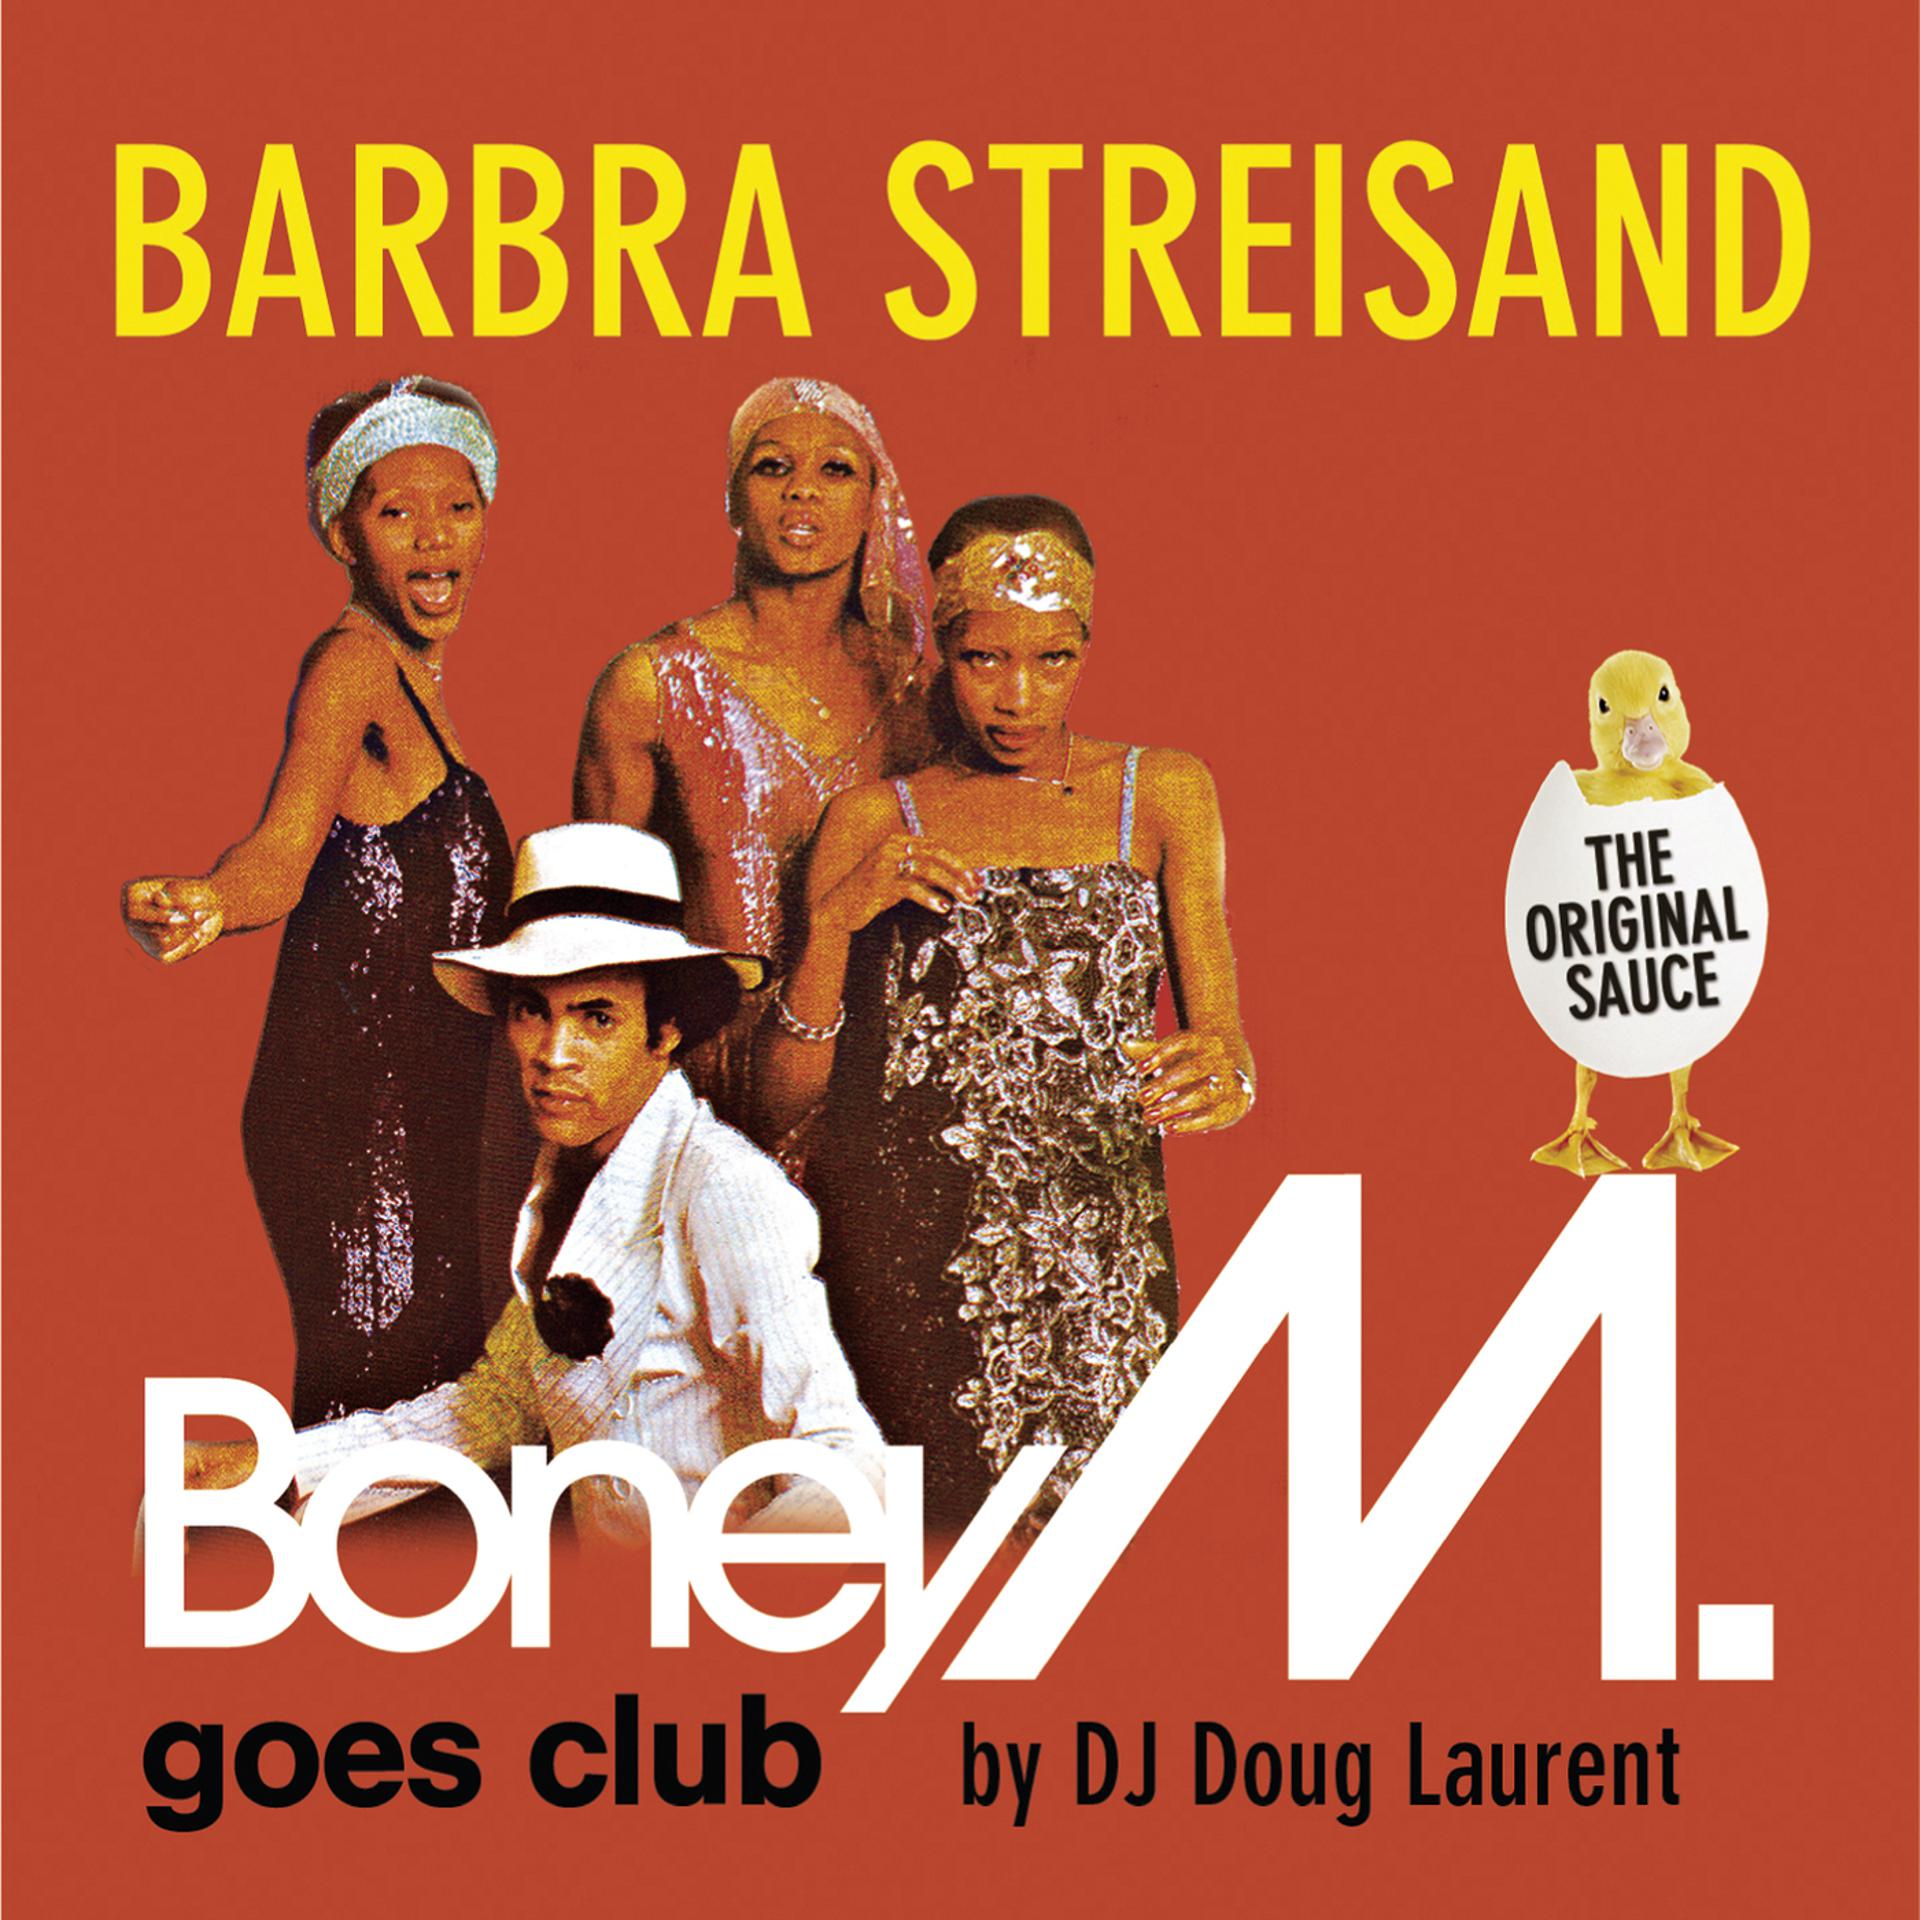 Boney m Barbra Streisand. Бони м альбомы. Бони м фотоальбомов.